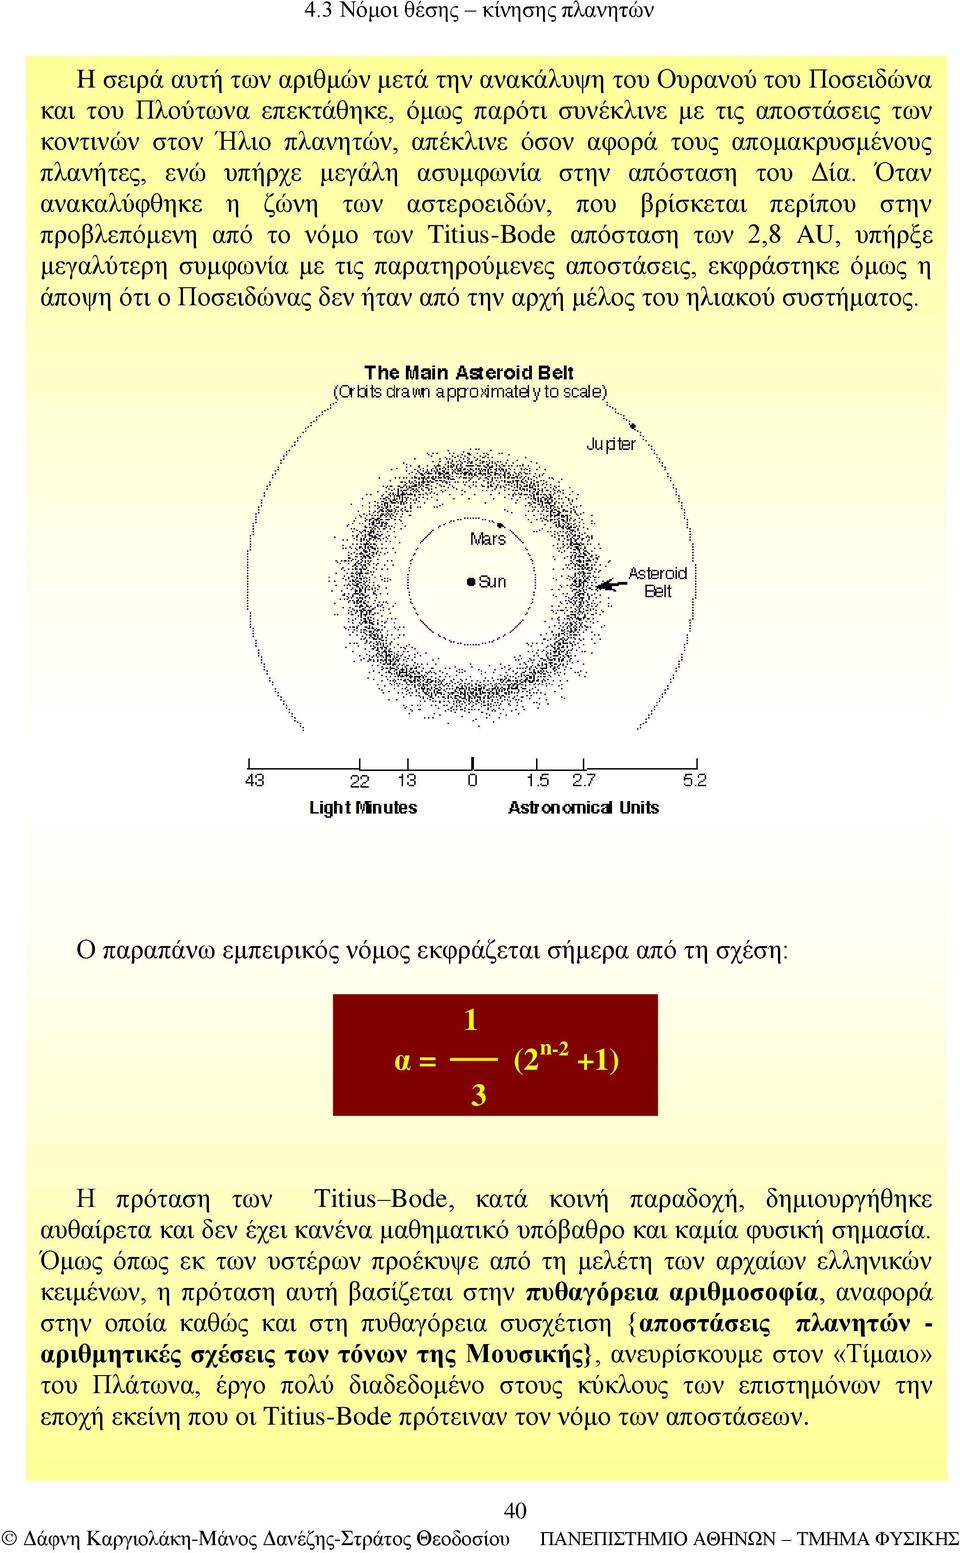 Όταν ανακαλύφθηκε η ζώνη των αστεροειδών, που βρίσκεται περίπου στην προβλεπόμενη από το νόμο των Titius-Bode απόσταση των 2,8 AU, υπήρξε μεγαλύτερη συμφωνία με τις παρατηρούμενες αποστάσεις,